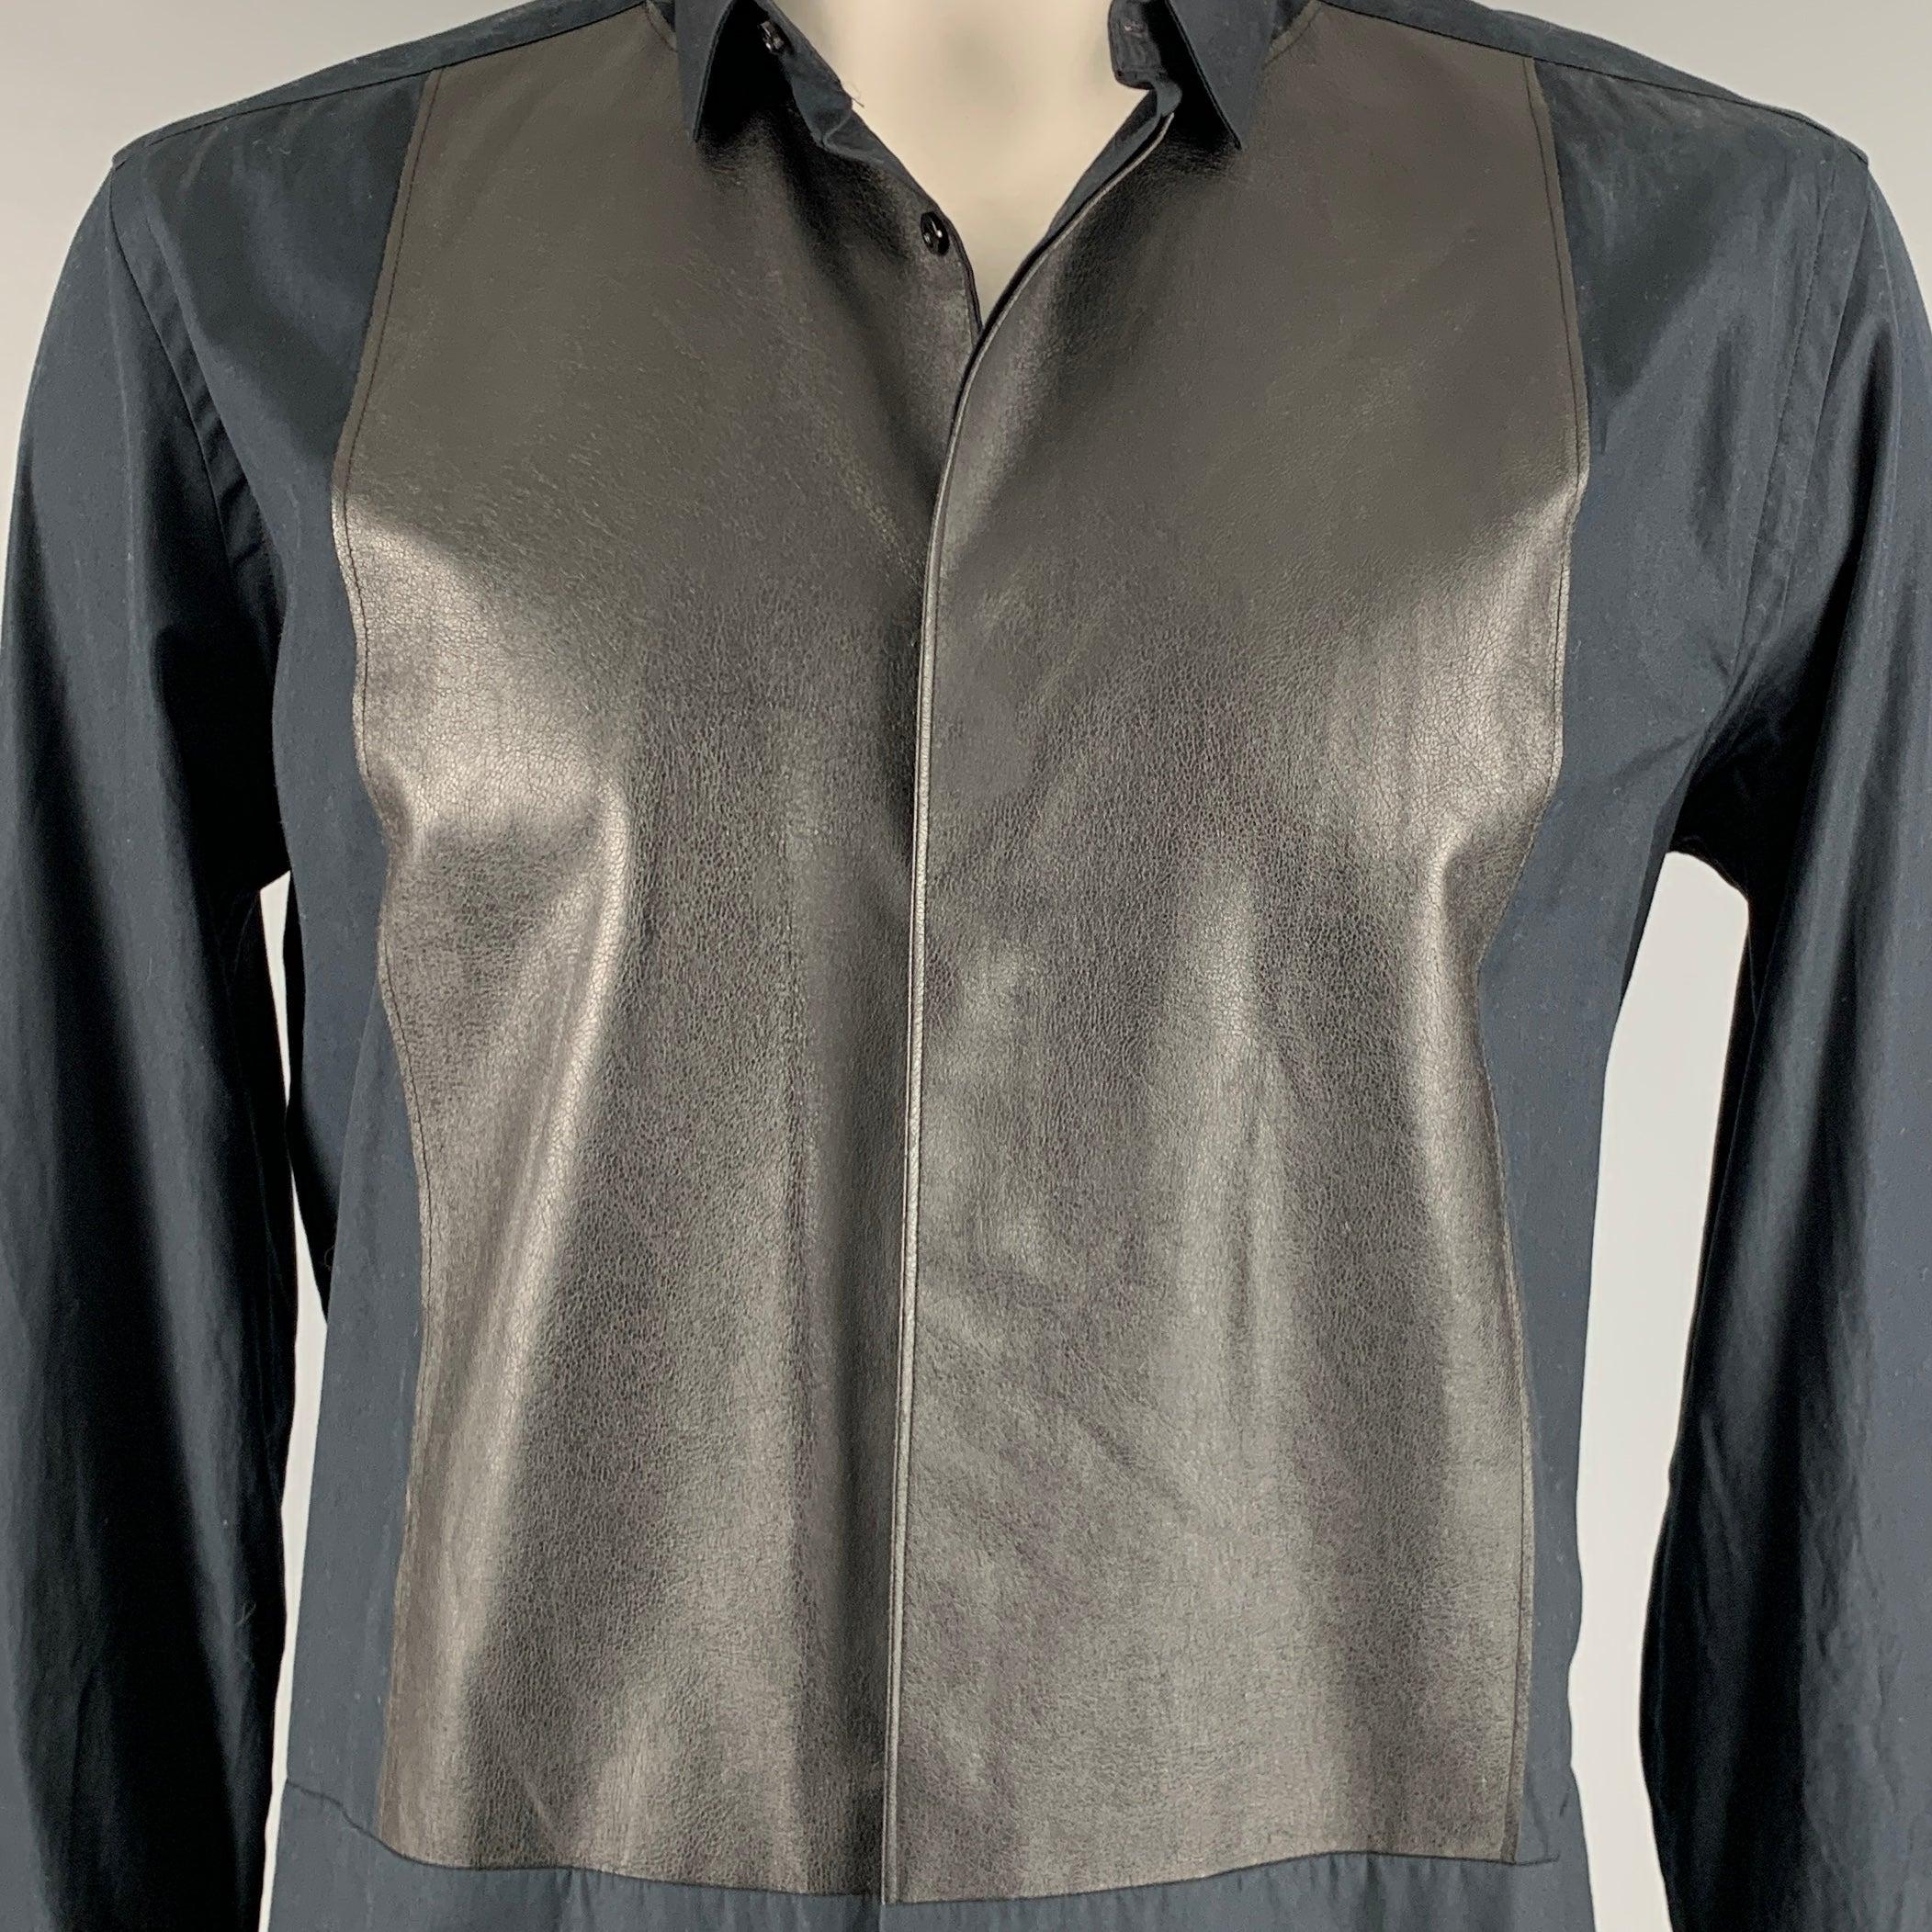 NEIL BARRETT Langarmhemd
in einem schwarzen Baumwollstoff mit
Vorderseite aus Polyester-Kunstleder, schmale Passform und verdeckter Knopfverschluss. Made in Italy Ausgezeichneter Pre-Owned Zustand. 

Markiert:   43/17 

Abmessungen: 
 
Schultern: 18